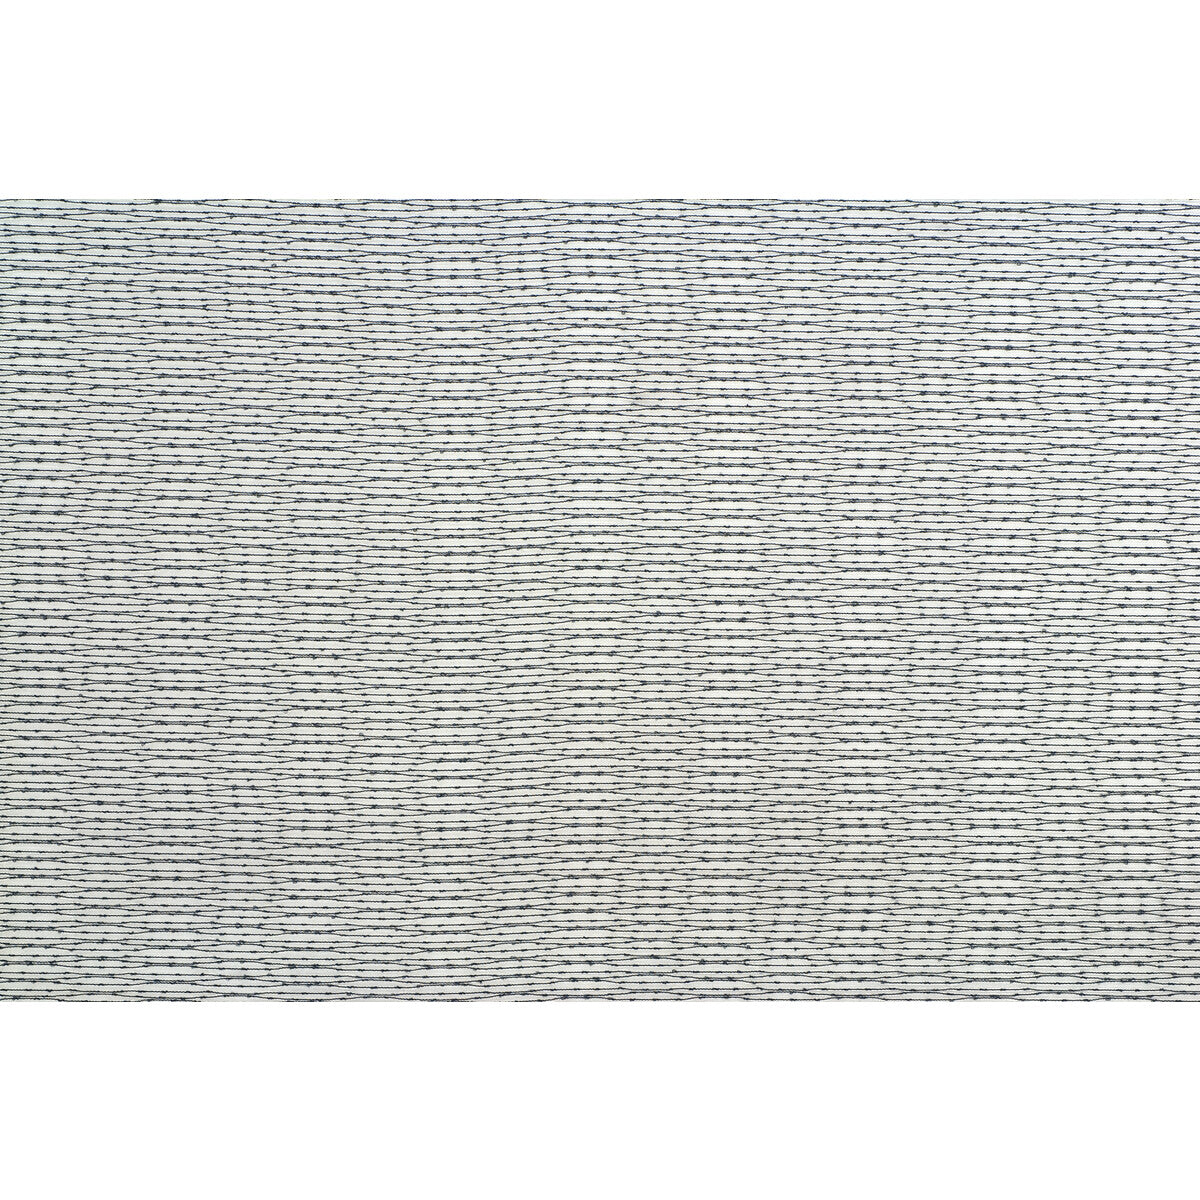 Kravet Basics fabric in 4292-21 color - pattern 4292.21.0 - by Kravet Basics